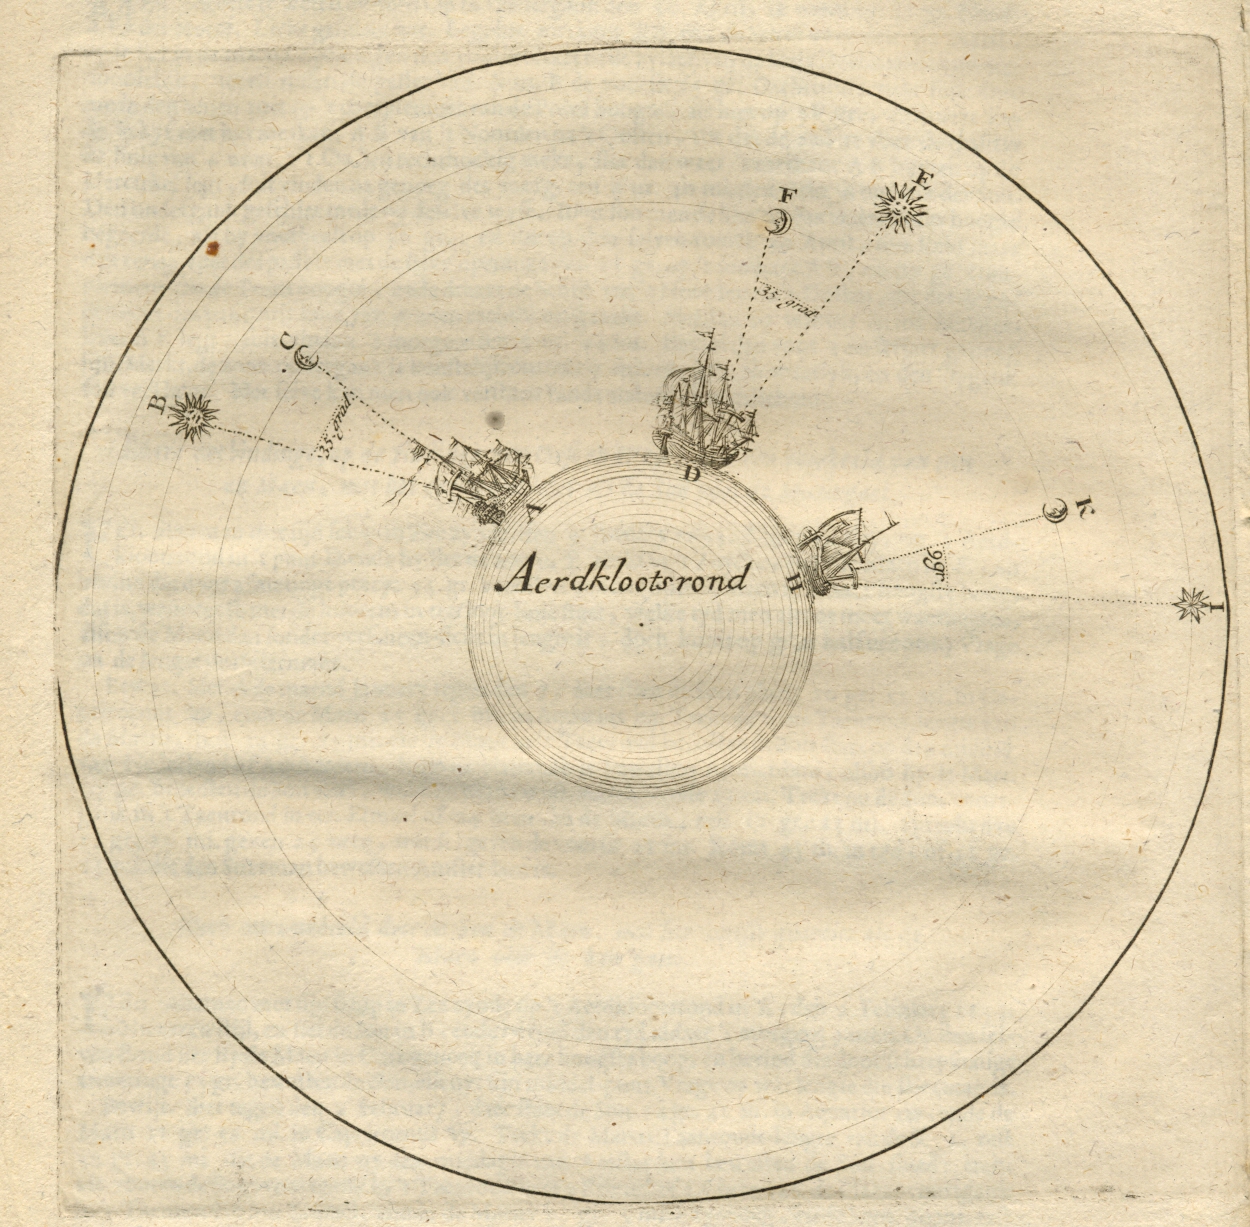 Tractaet en ware Zeemans almanach over 1693, navigatie-aanwijzing